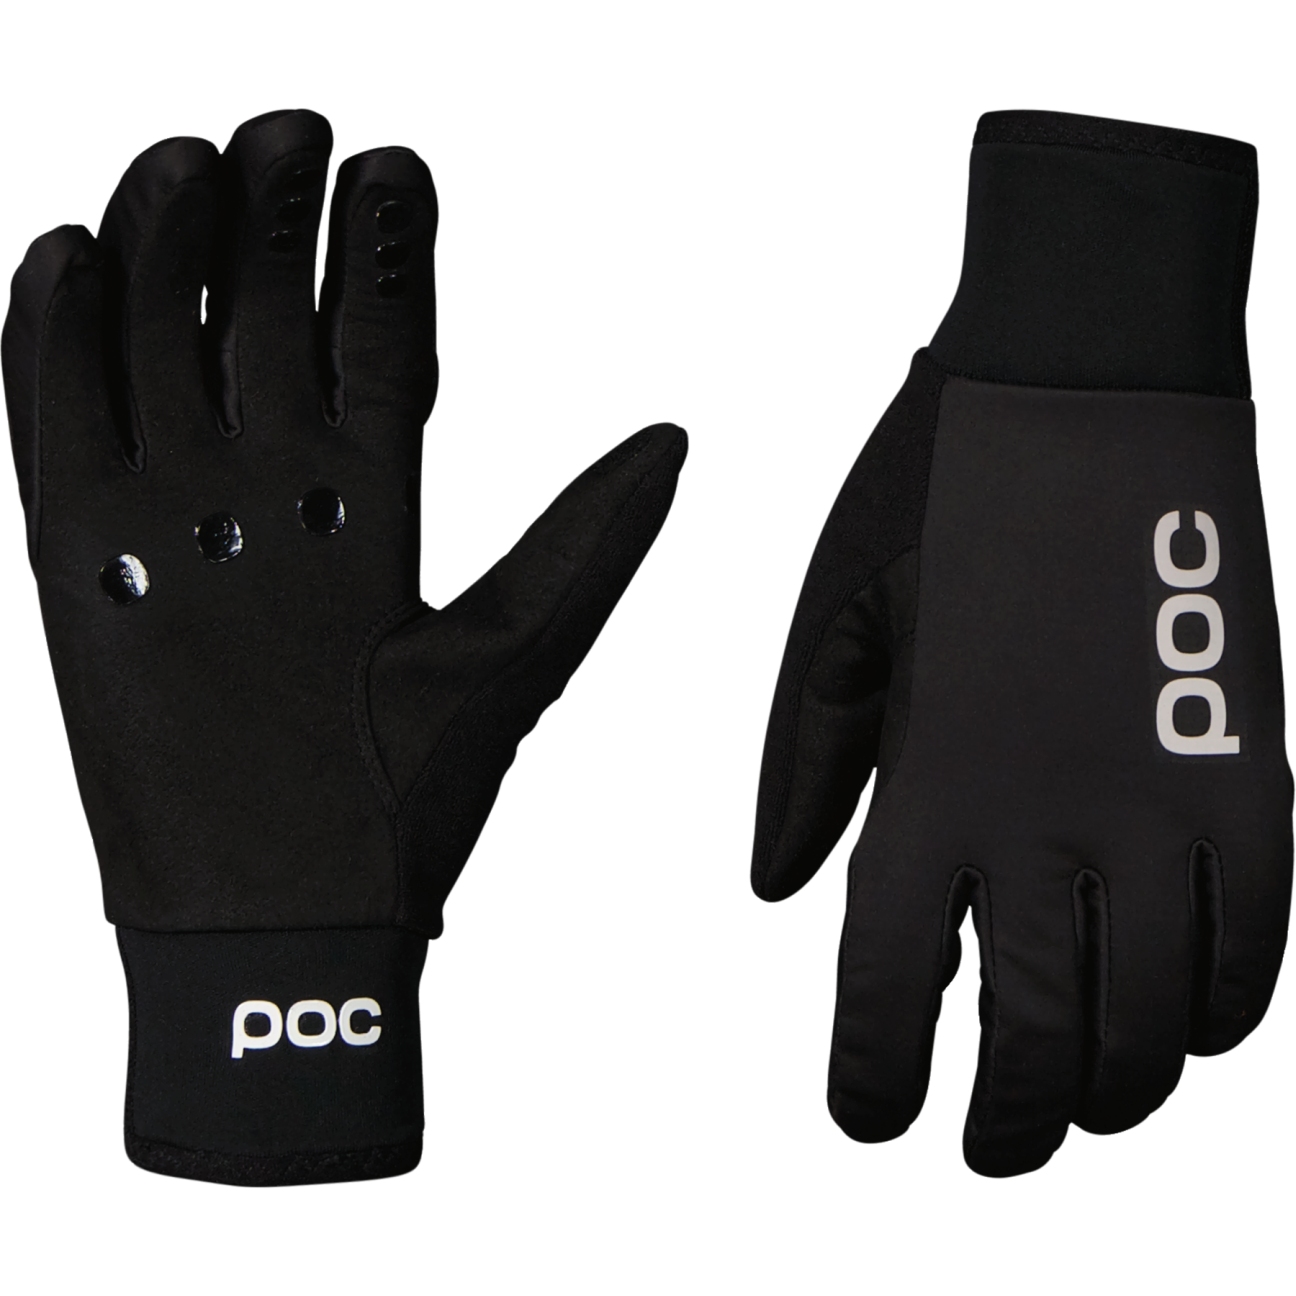 Produktbild von POC Thermal Lite Handschuh - 1002 Uranium Black